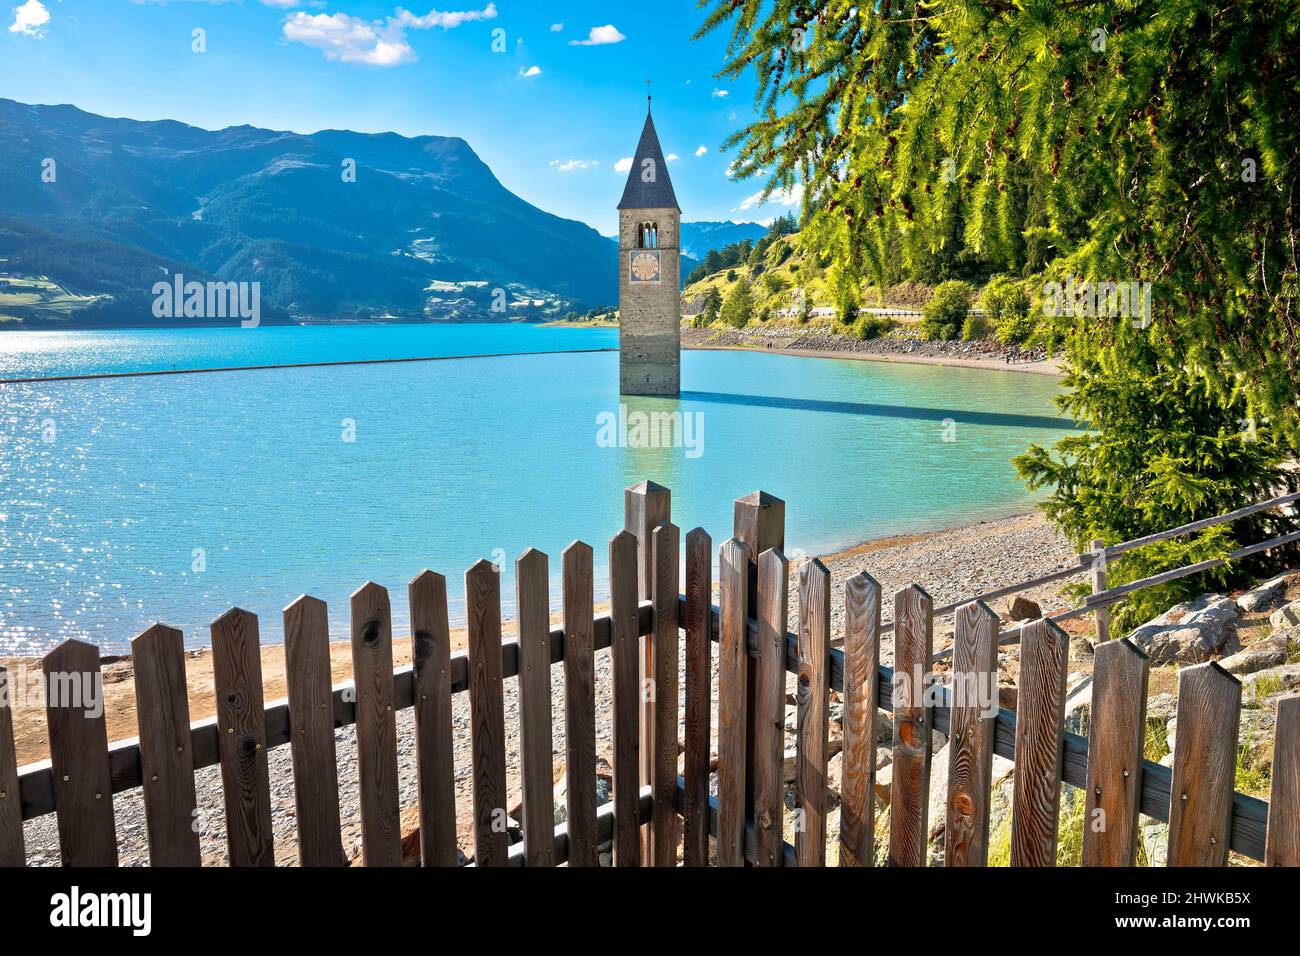 Untergetaucht Glockenturm von Graun Vinschgau oder Graun im Vinschgau am Reschensee Landschaftsansicht, Südtirol Region Italien Stockfoto